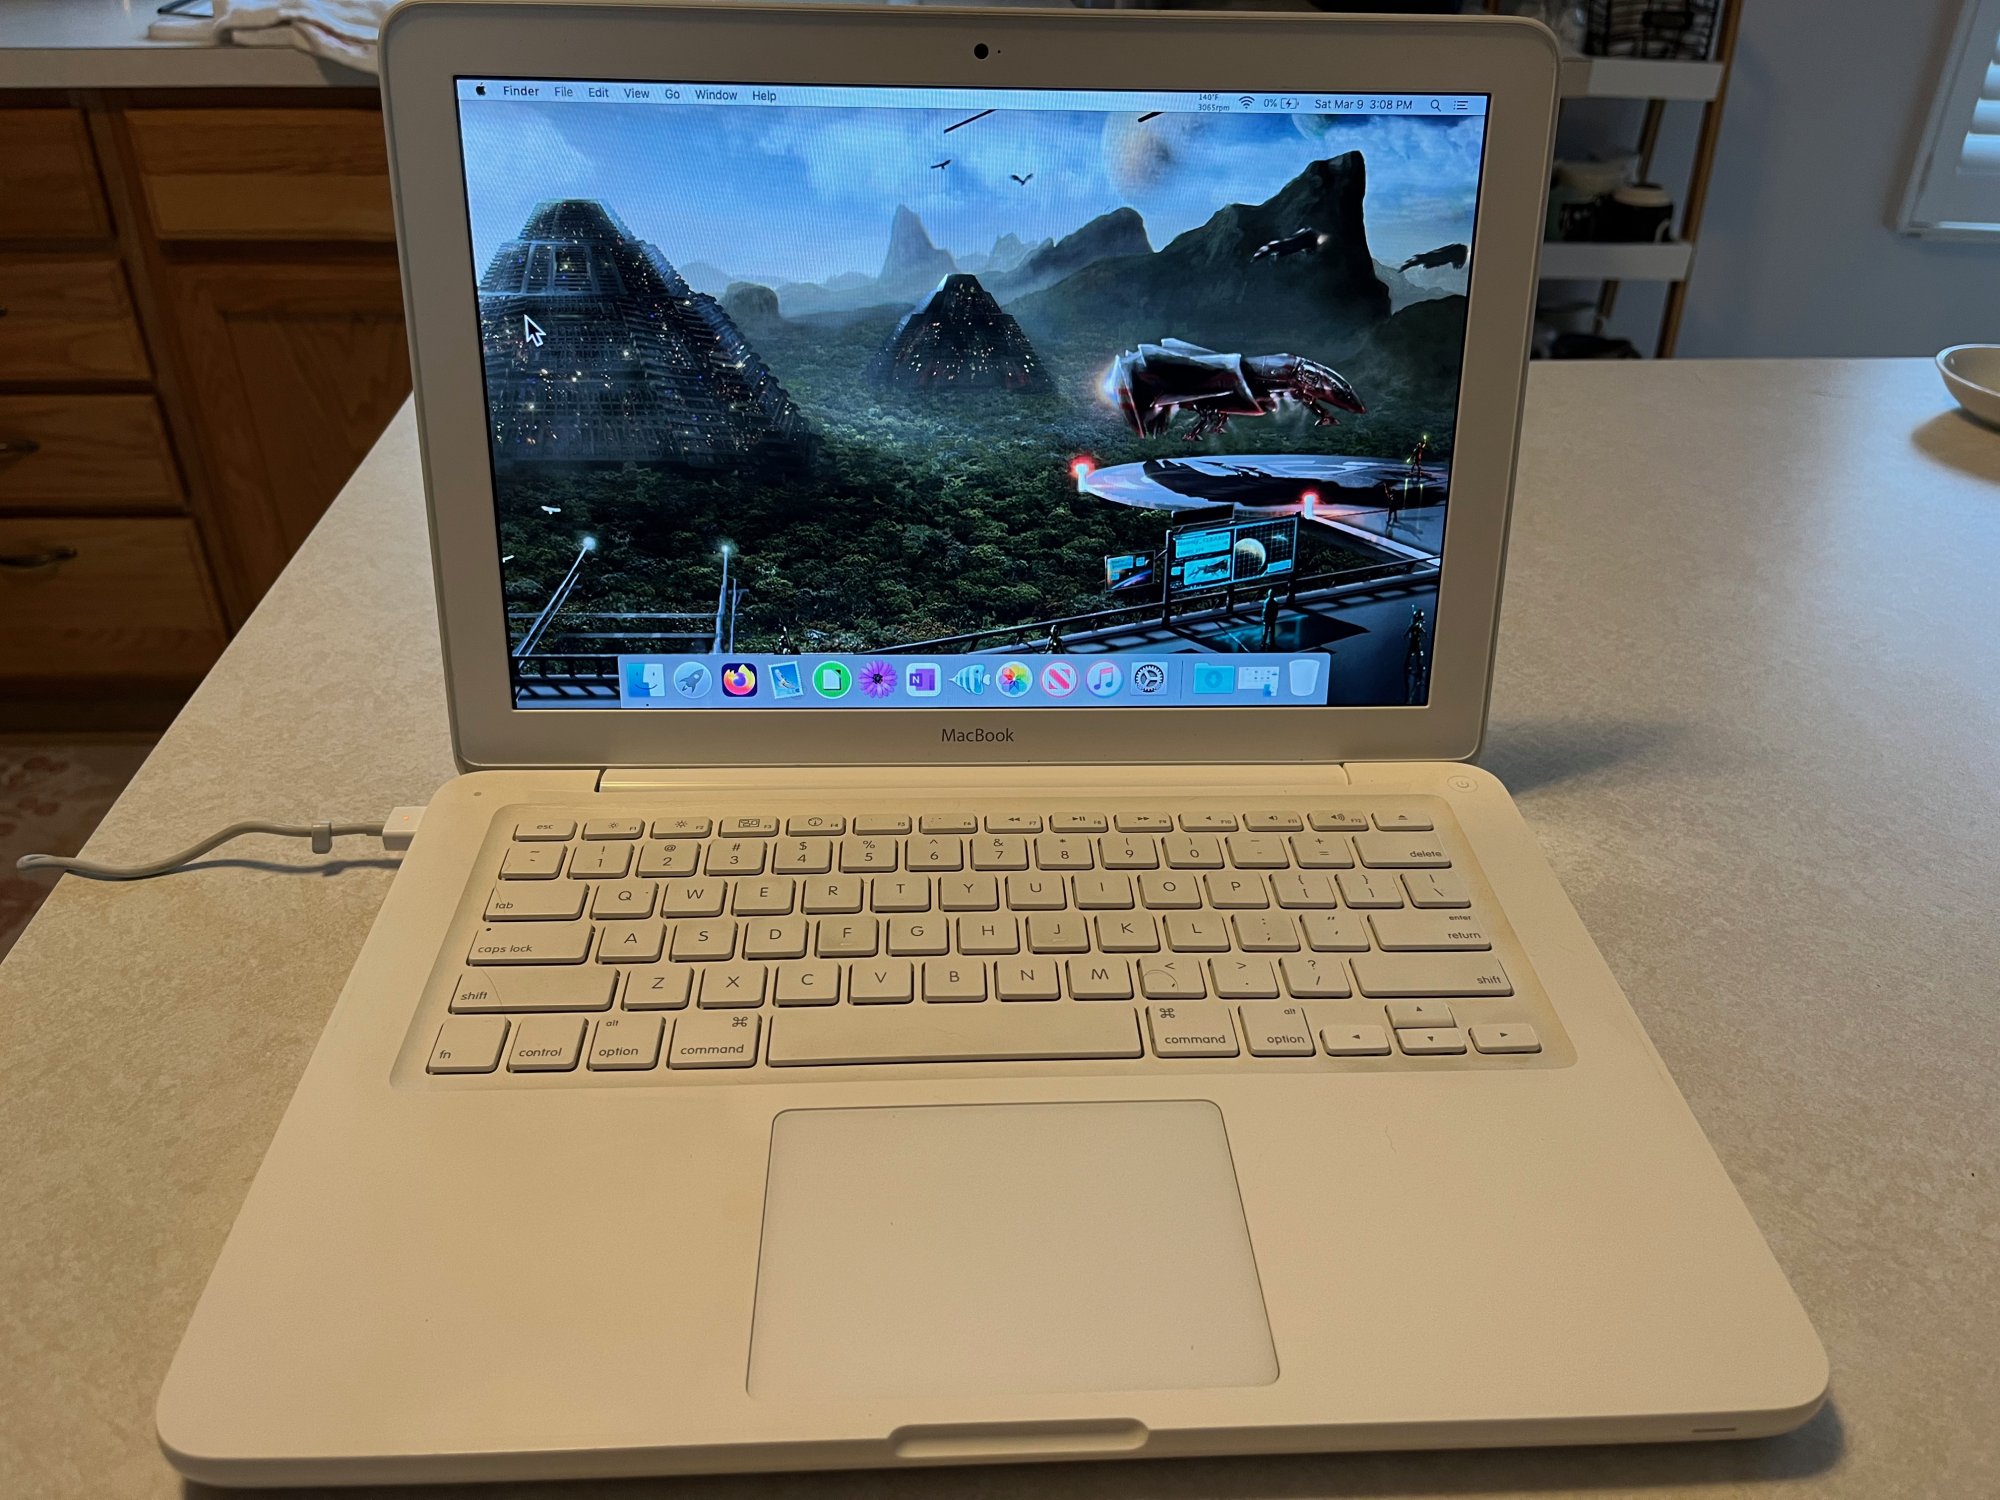 MacBook 2010 White photo.jpg